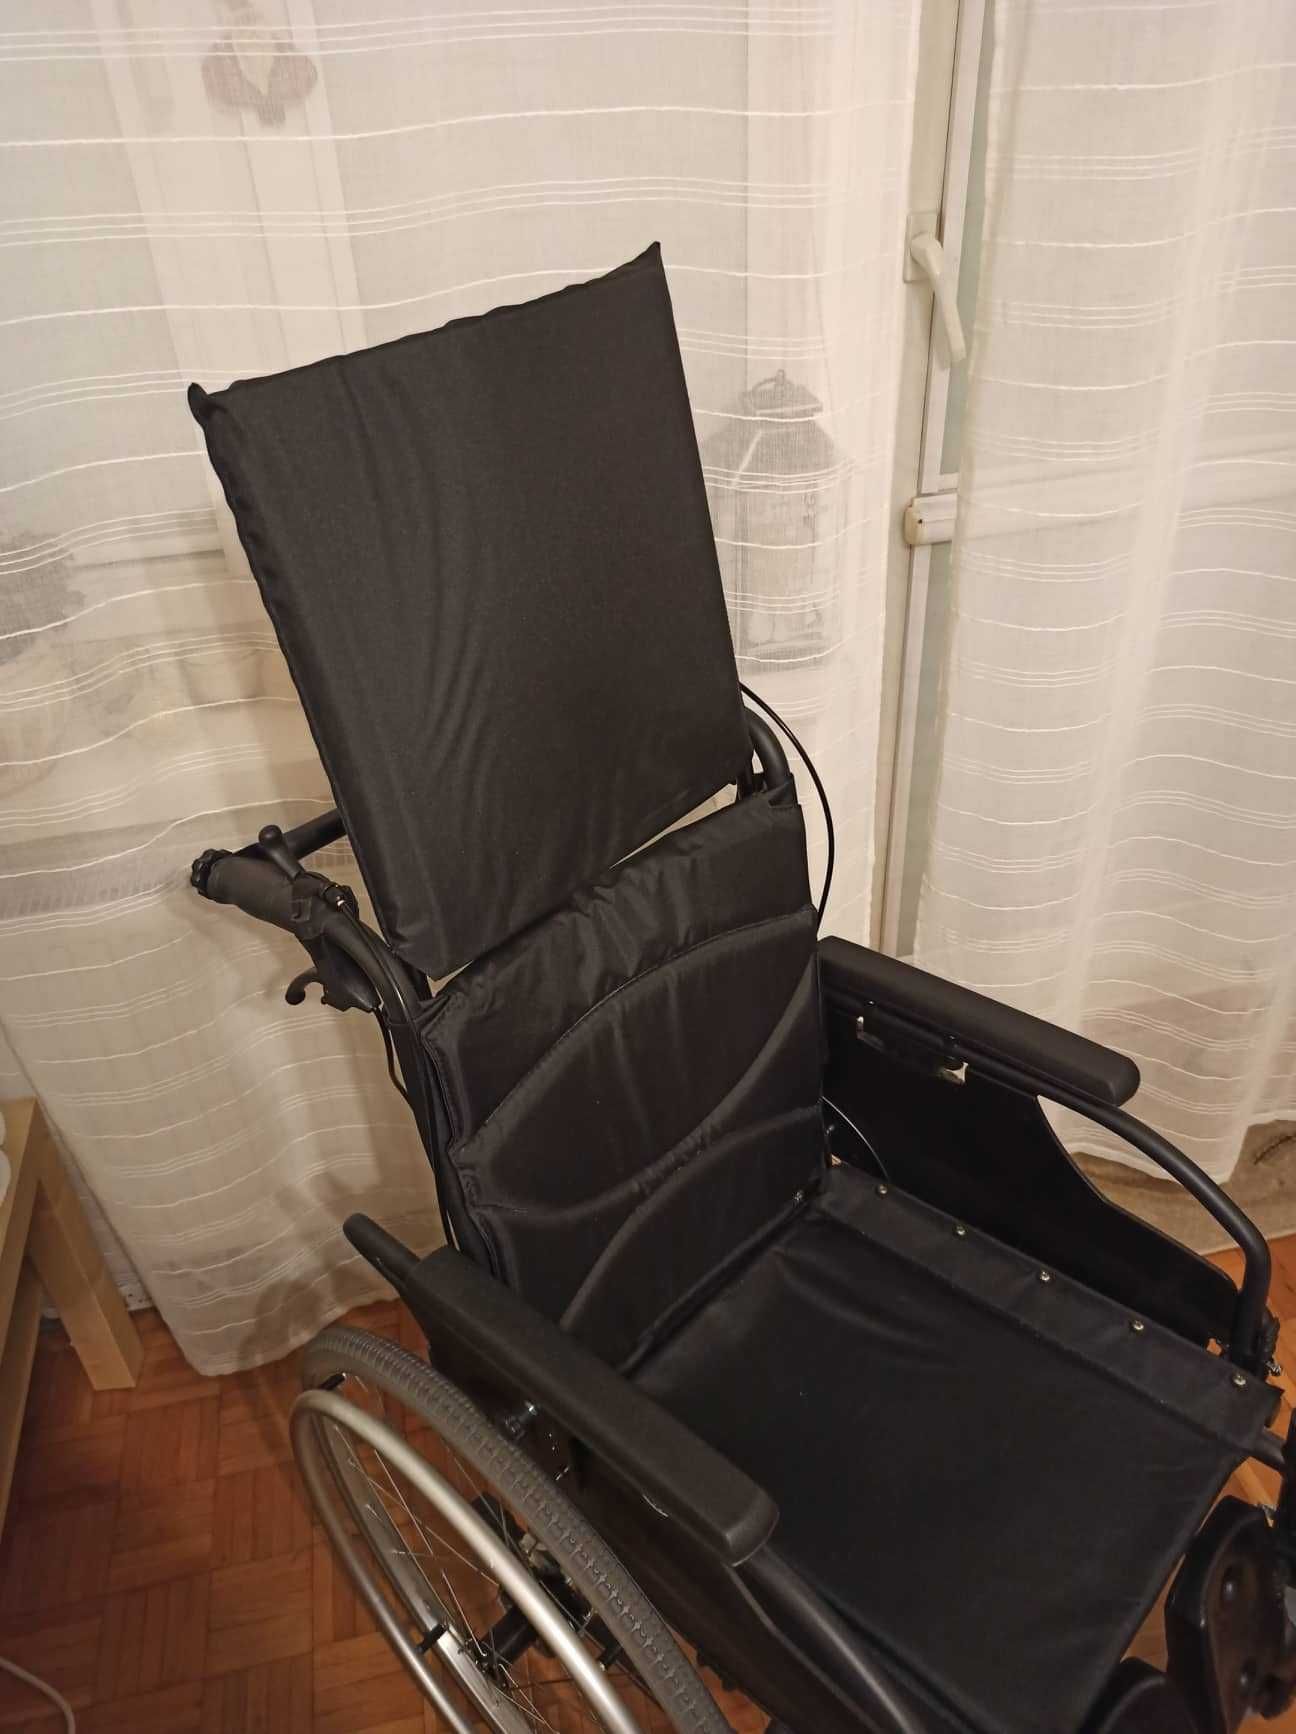 Wózek inwalidzki Vermeiren D200 30, nowy nieużywany